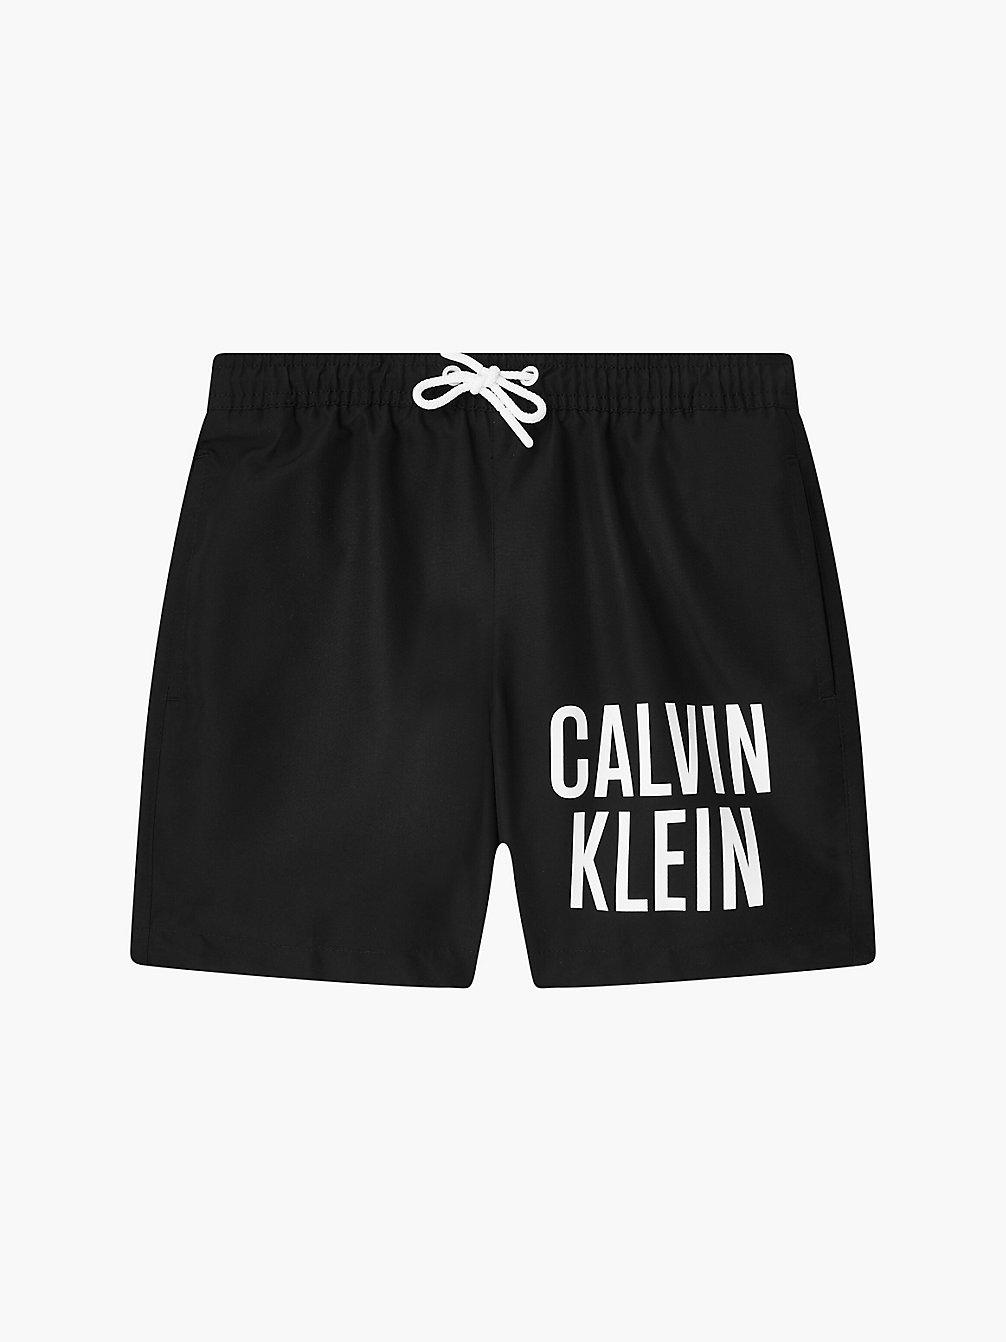 PVH BLACK Badeshorts Für Jungen - Intense Power undefined boys Calvin Klein